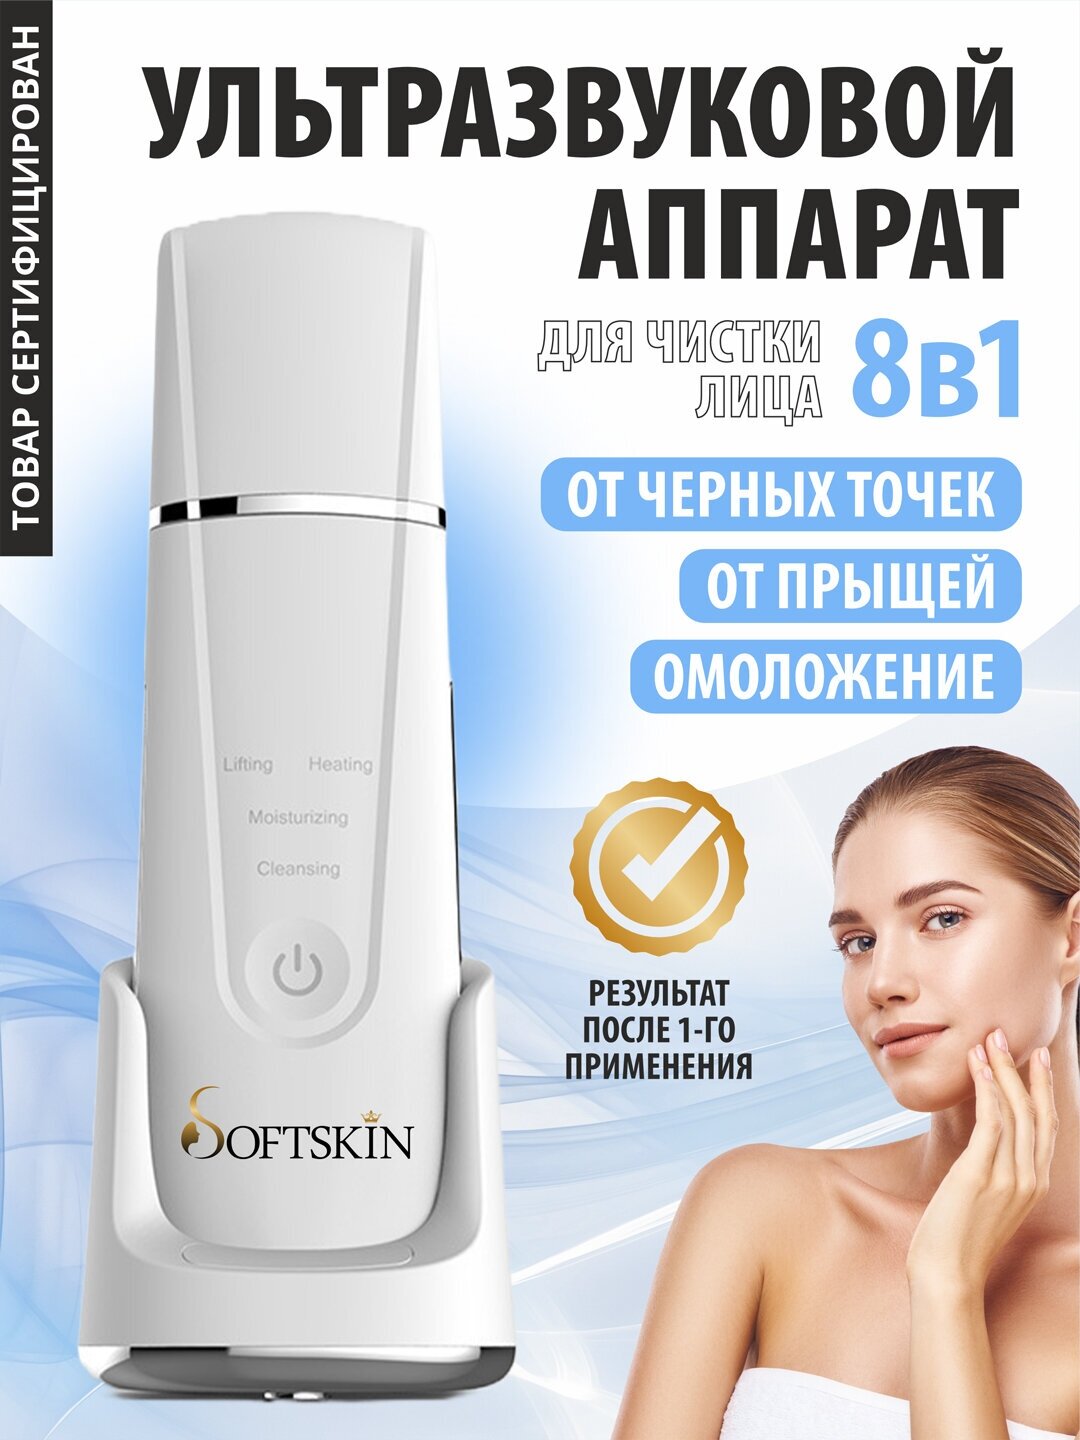 Softskin / Ультразвуковая чистка. Косметологический, многофункциональный, беспроводной аппарат для чистки кожи лица, лифтинга и увлажнения